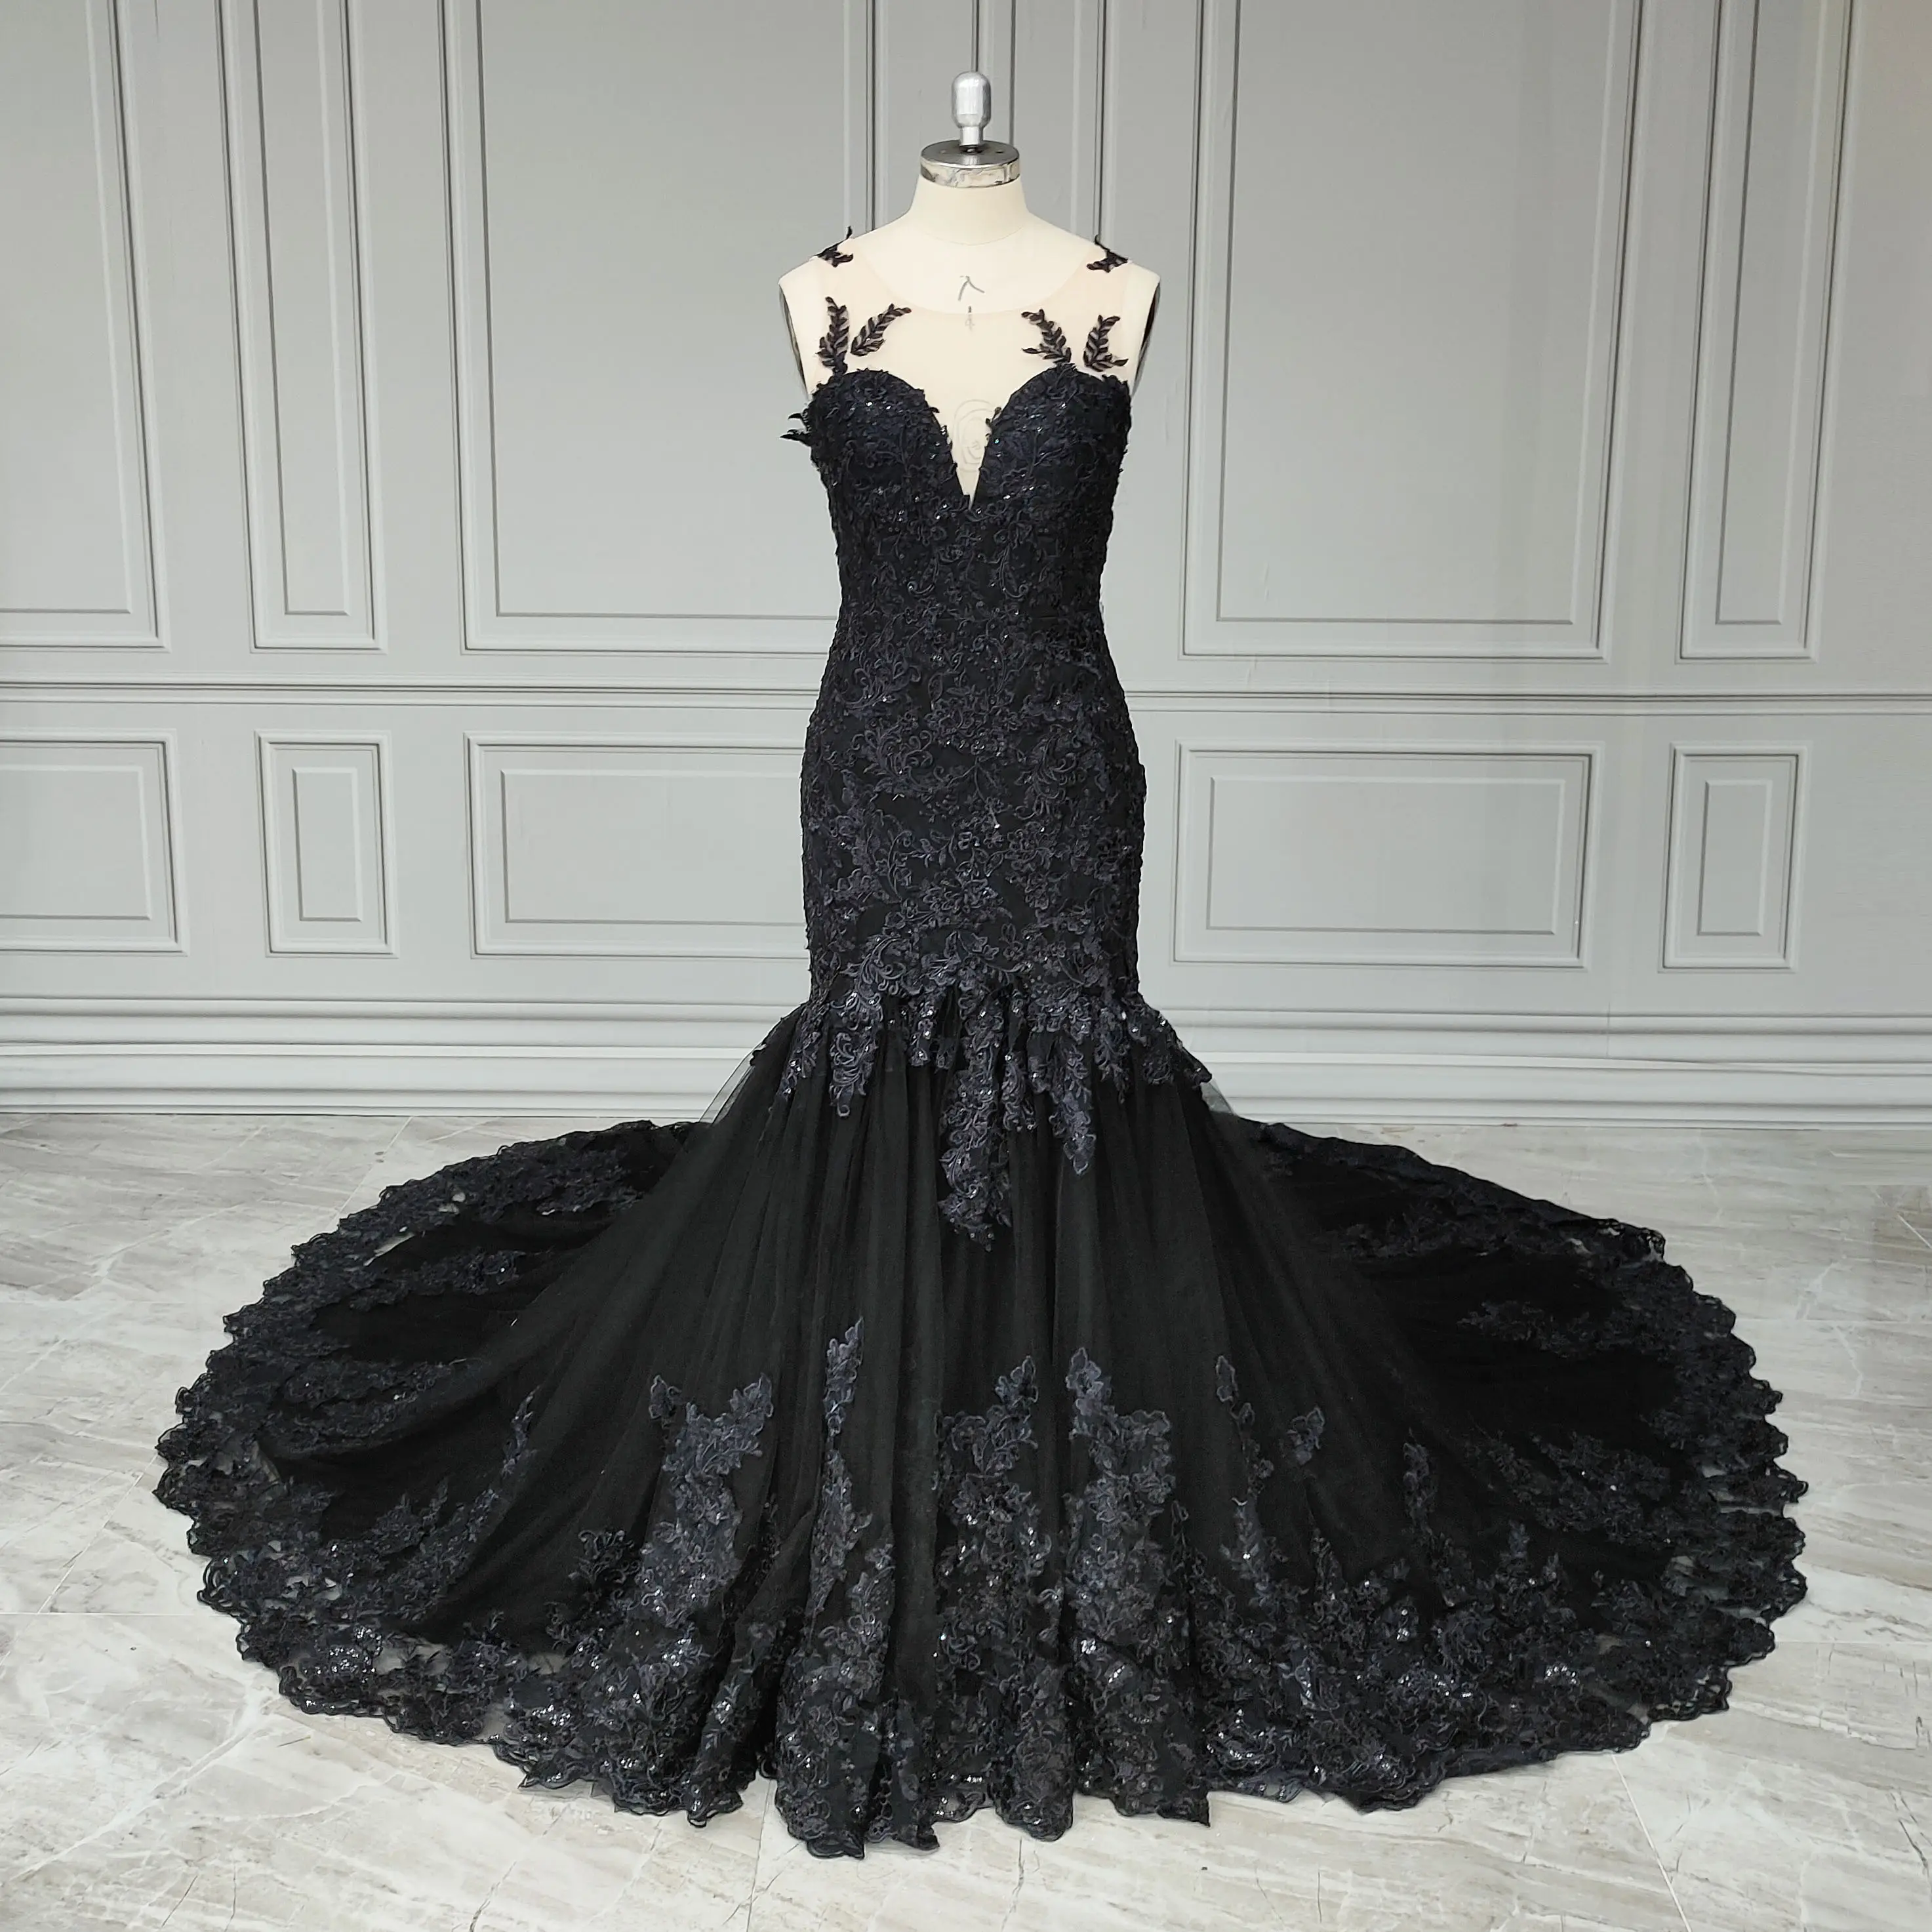 Vestido de noiva 100% real, lindo vestido de renda com miçangas pretas e apliques, elegante, com roupão, para mulheres, com alta qualidade, fotos 100% reais